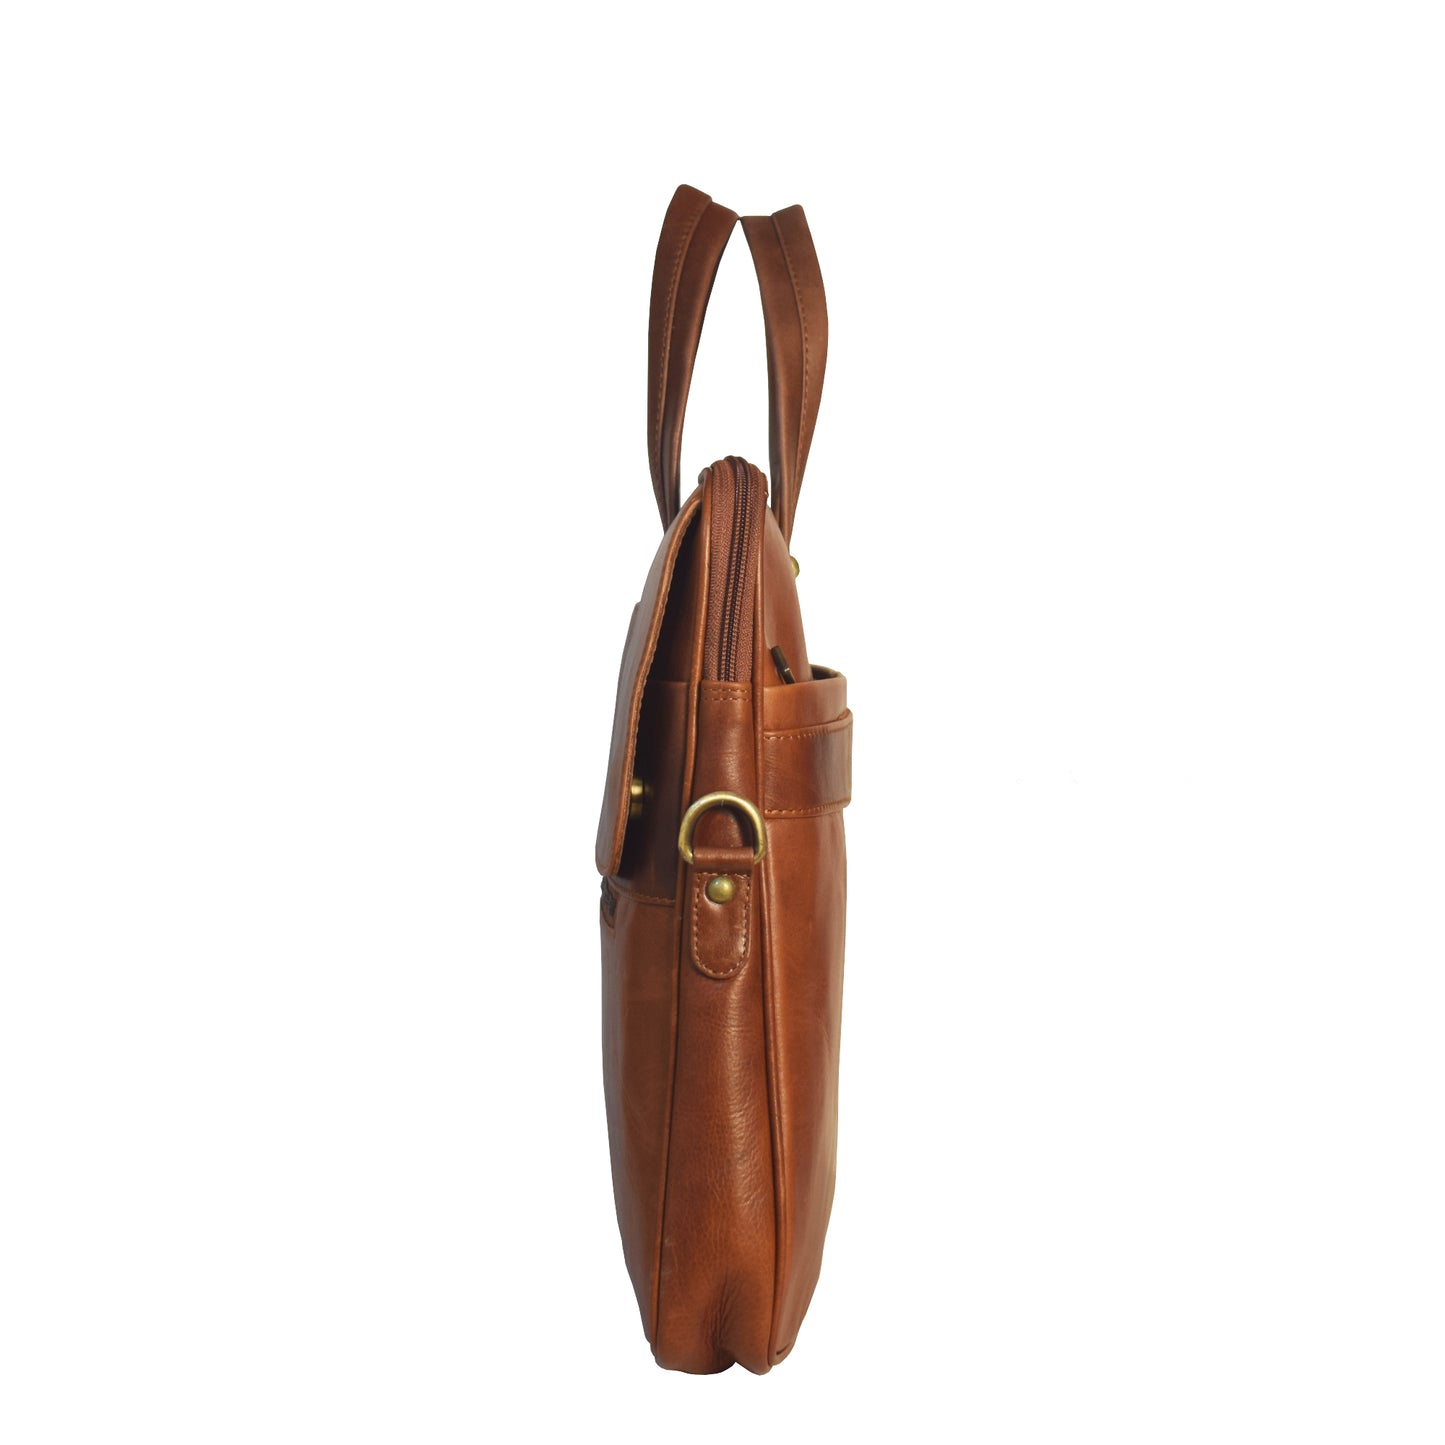 LINDSEY STREET Leather Laptop Bag for Men's | Genuine Leather Handbag | Leather Shoulder Bag | Office Bag for Mens